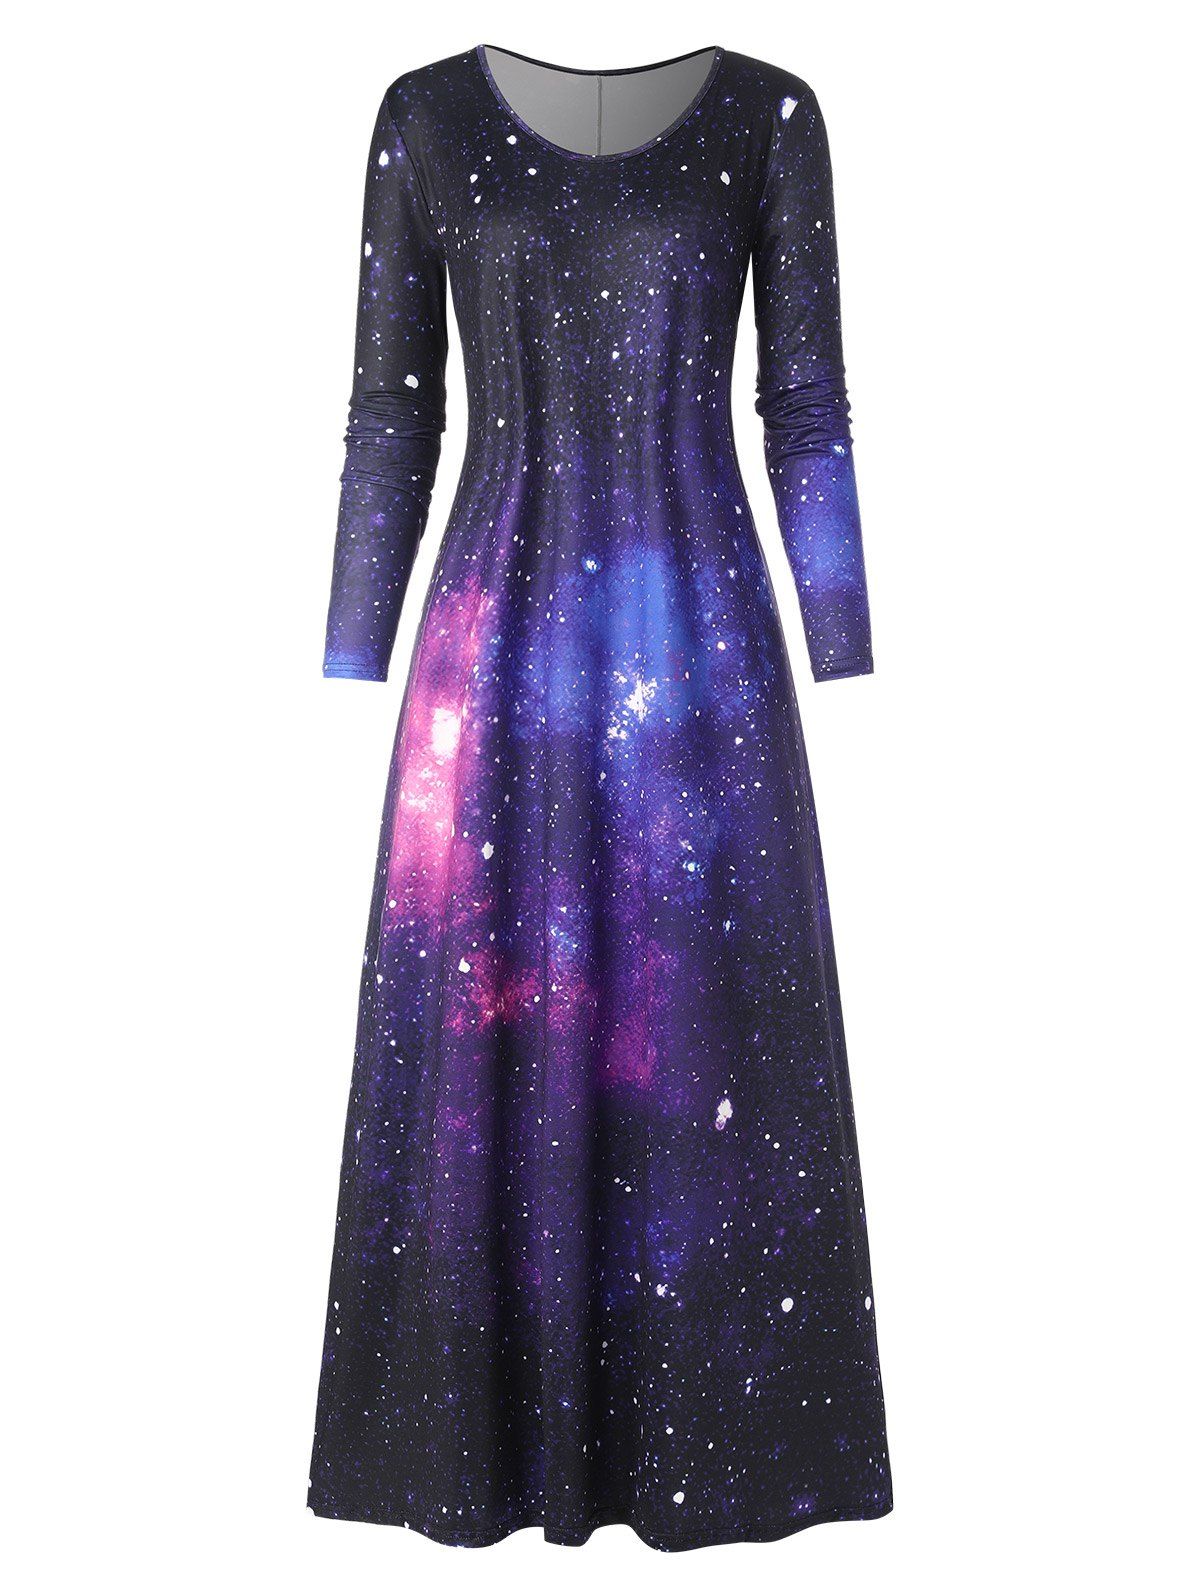 Robe Longue Galaxie à Manches Longues - multicolor S